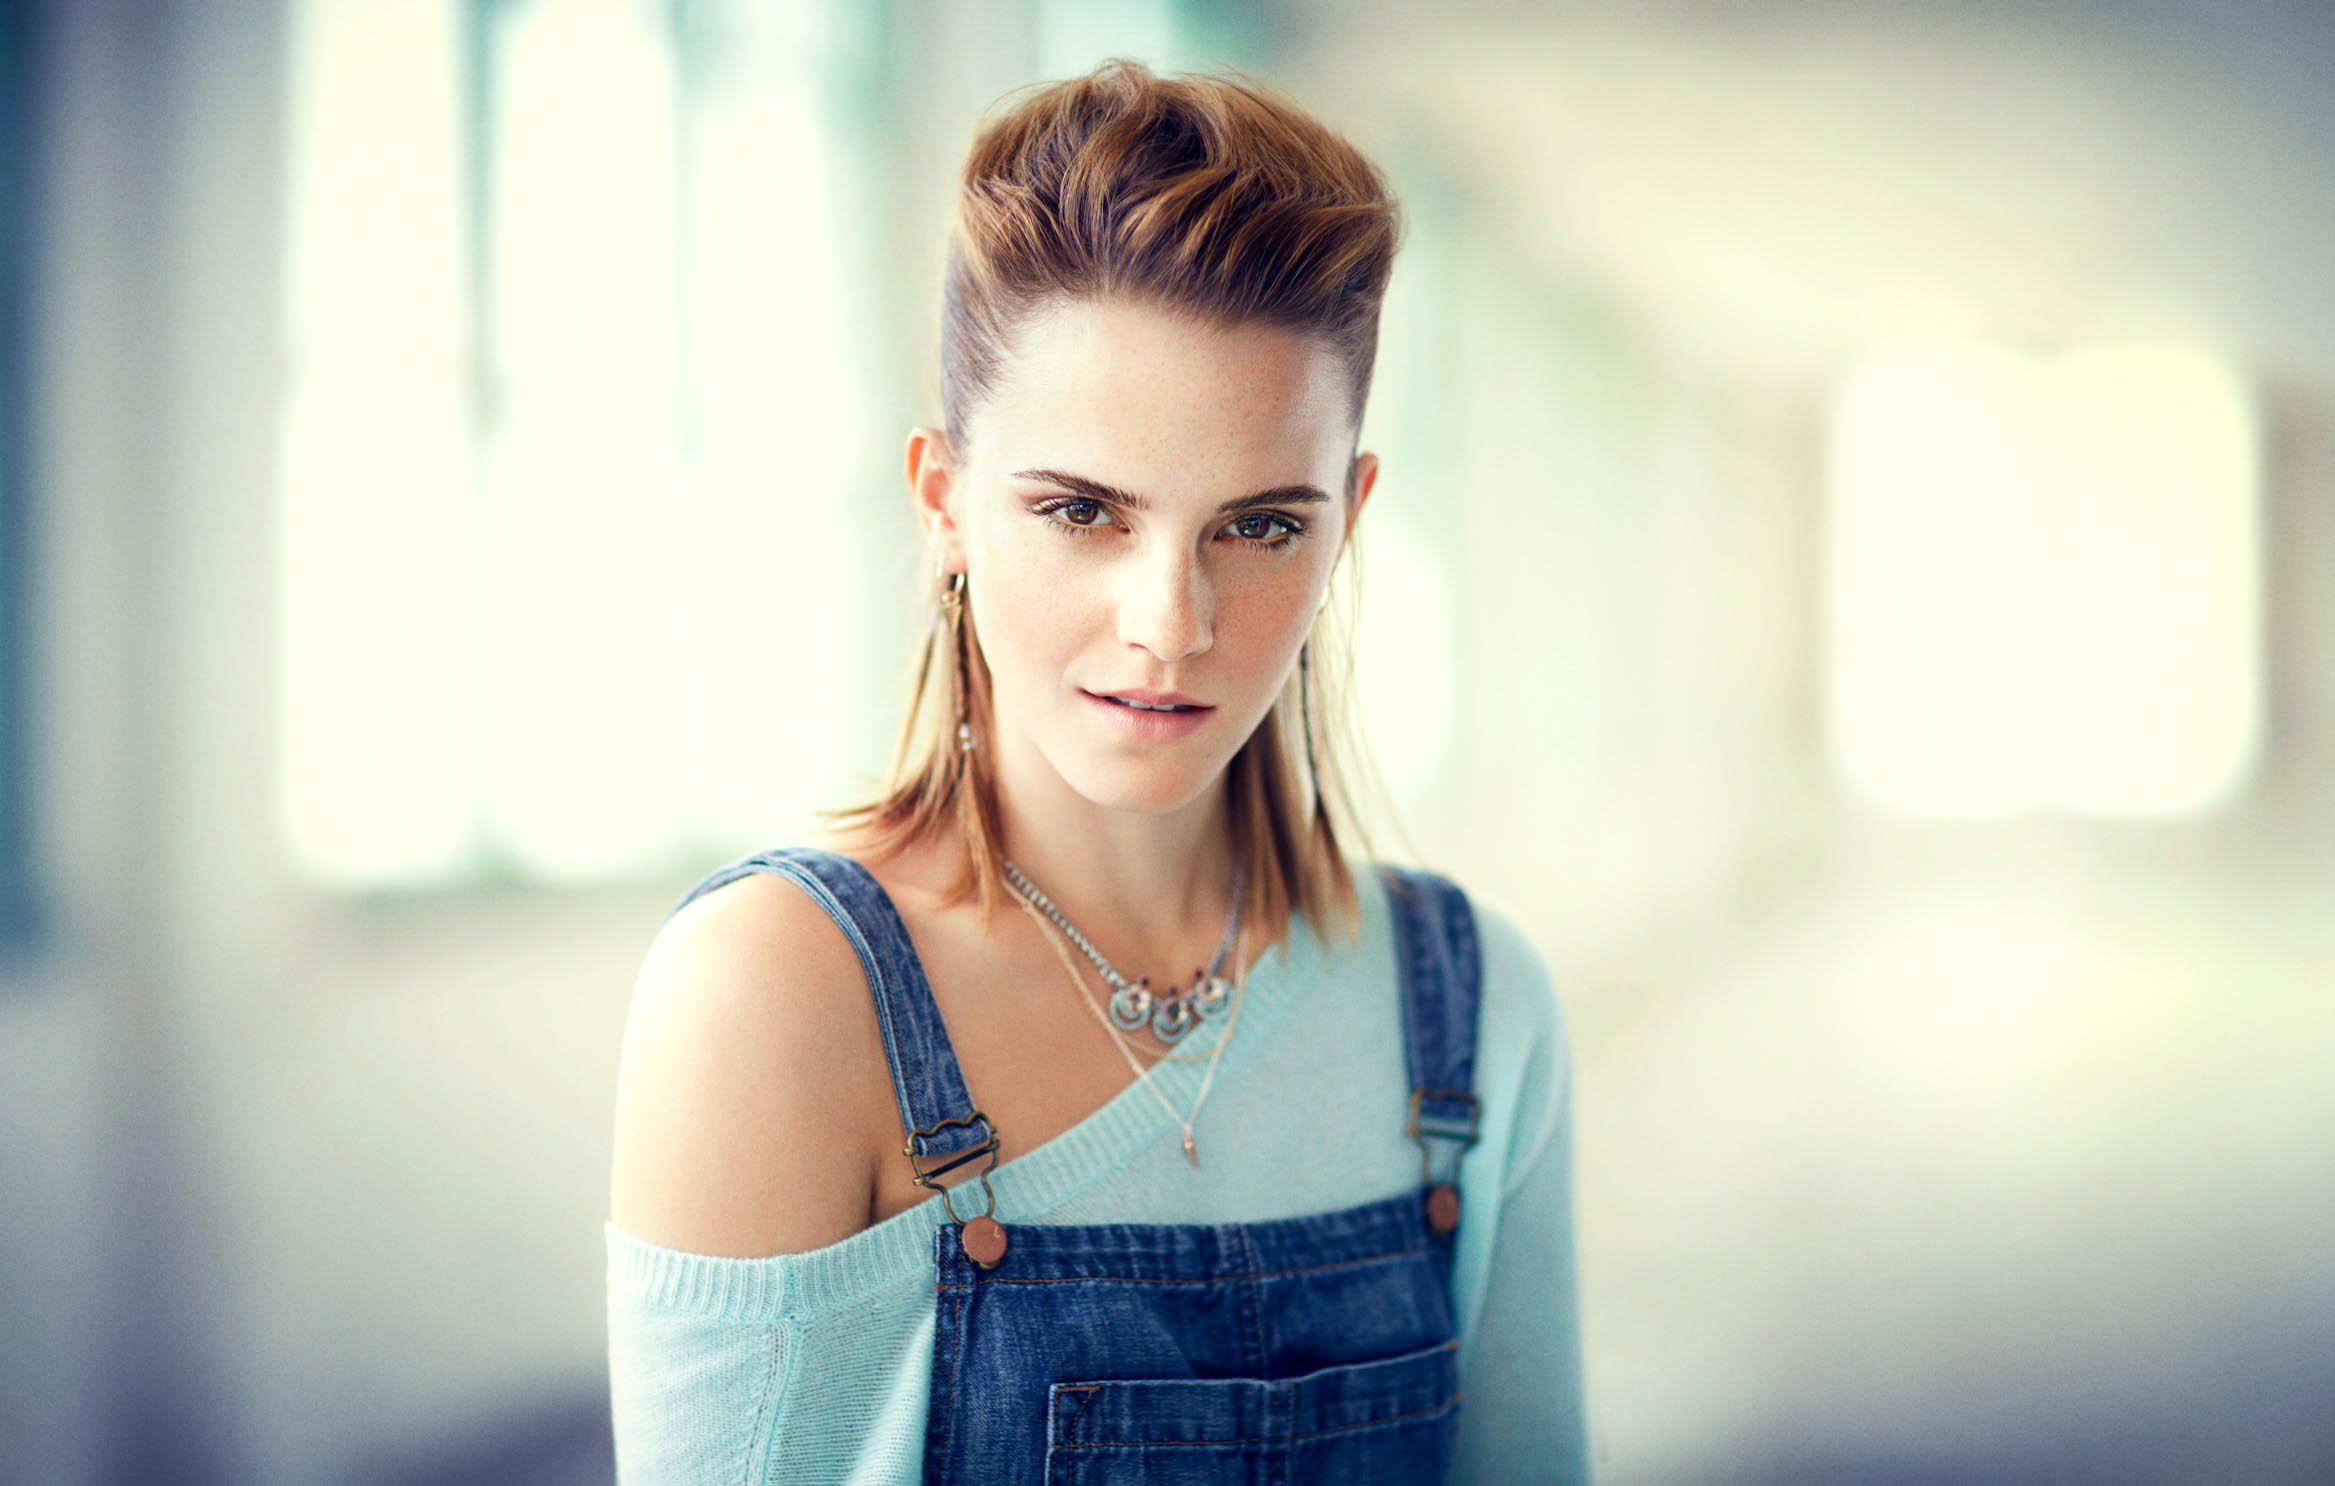 Beautiful Emma Watson Images Hd - HD Wallpaper 